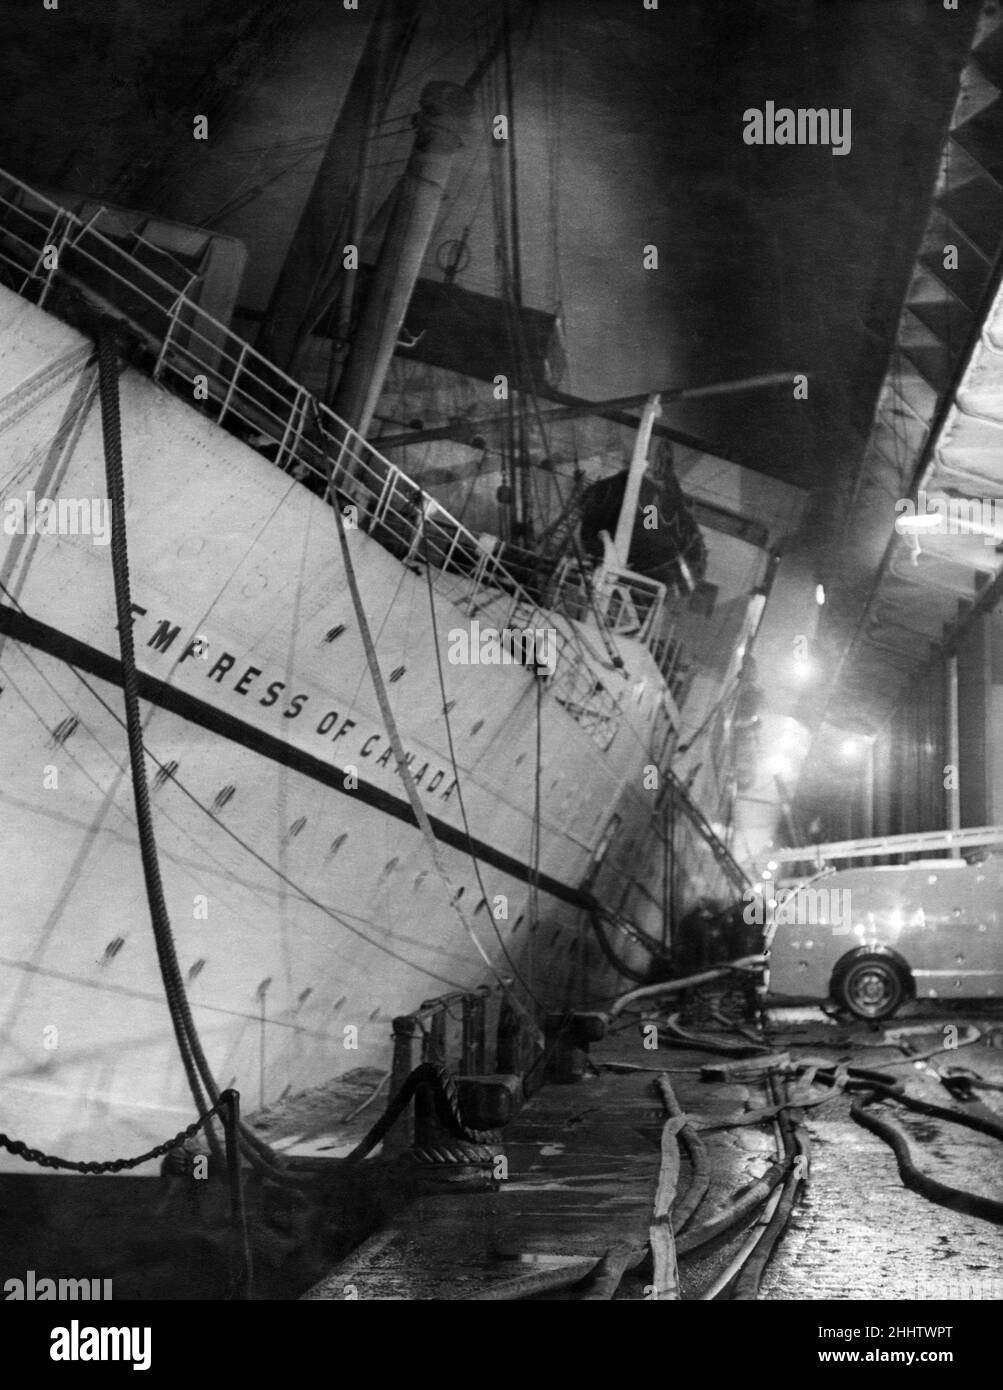 La liste alarmante lorsque la superstructure de l'impératrice du Canada est venue à quelques pieds des baies de chargement sur le bassin du quai.Gladstone Dock, Liverpool.Janvier 1953. Banque D'Images